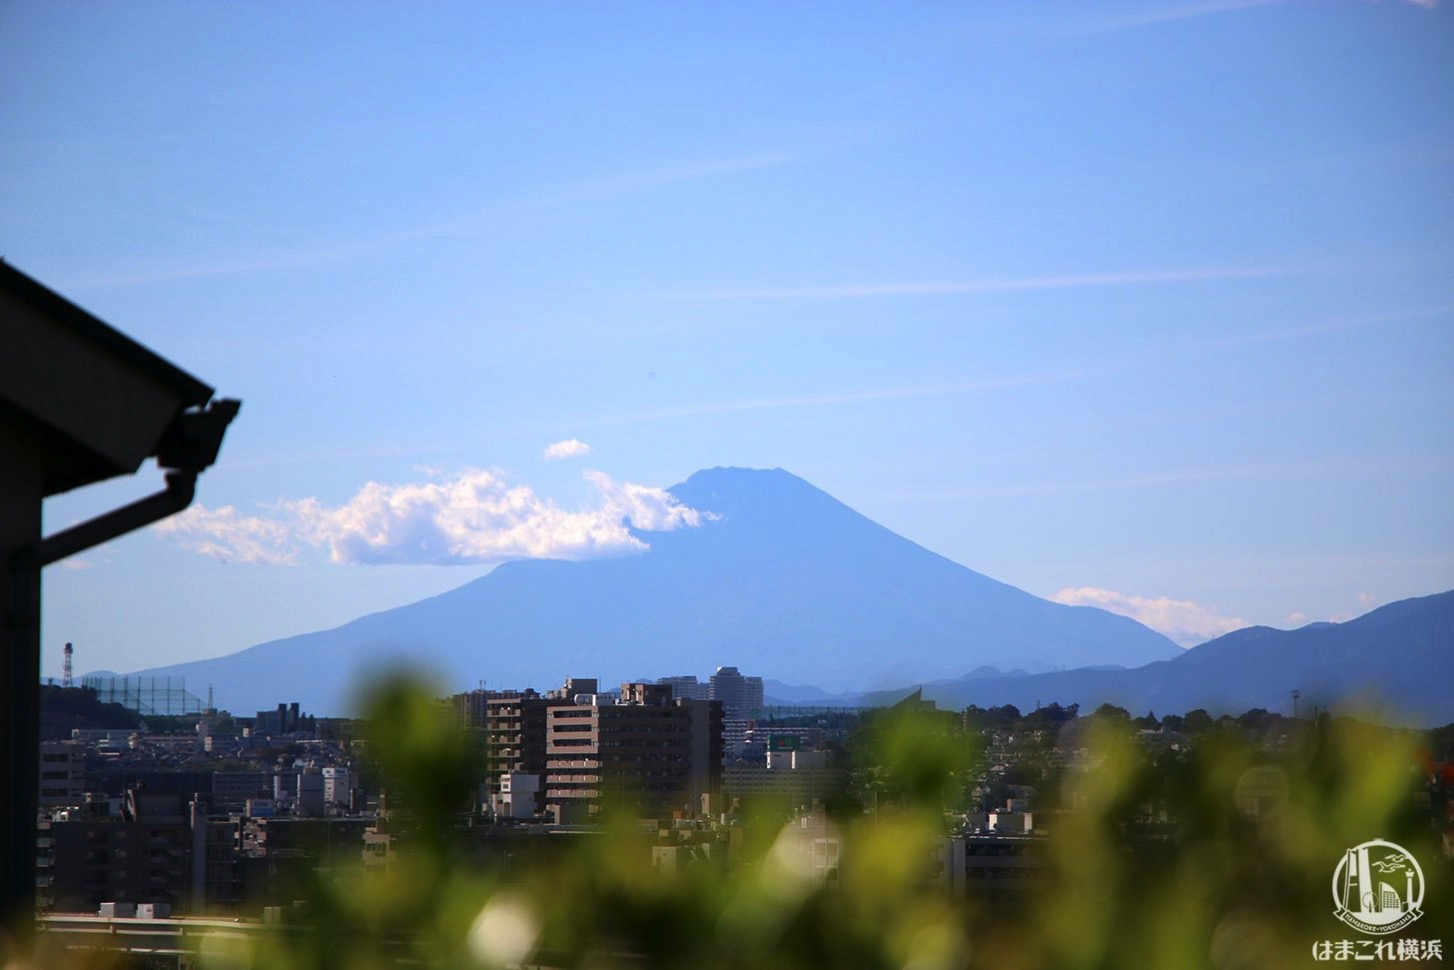 山手イタリア山庭園から見た富士山